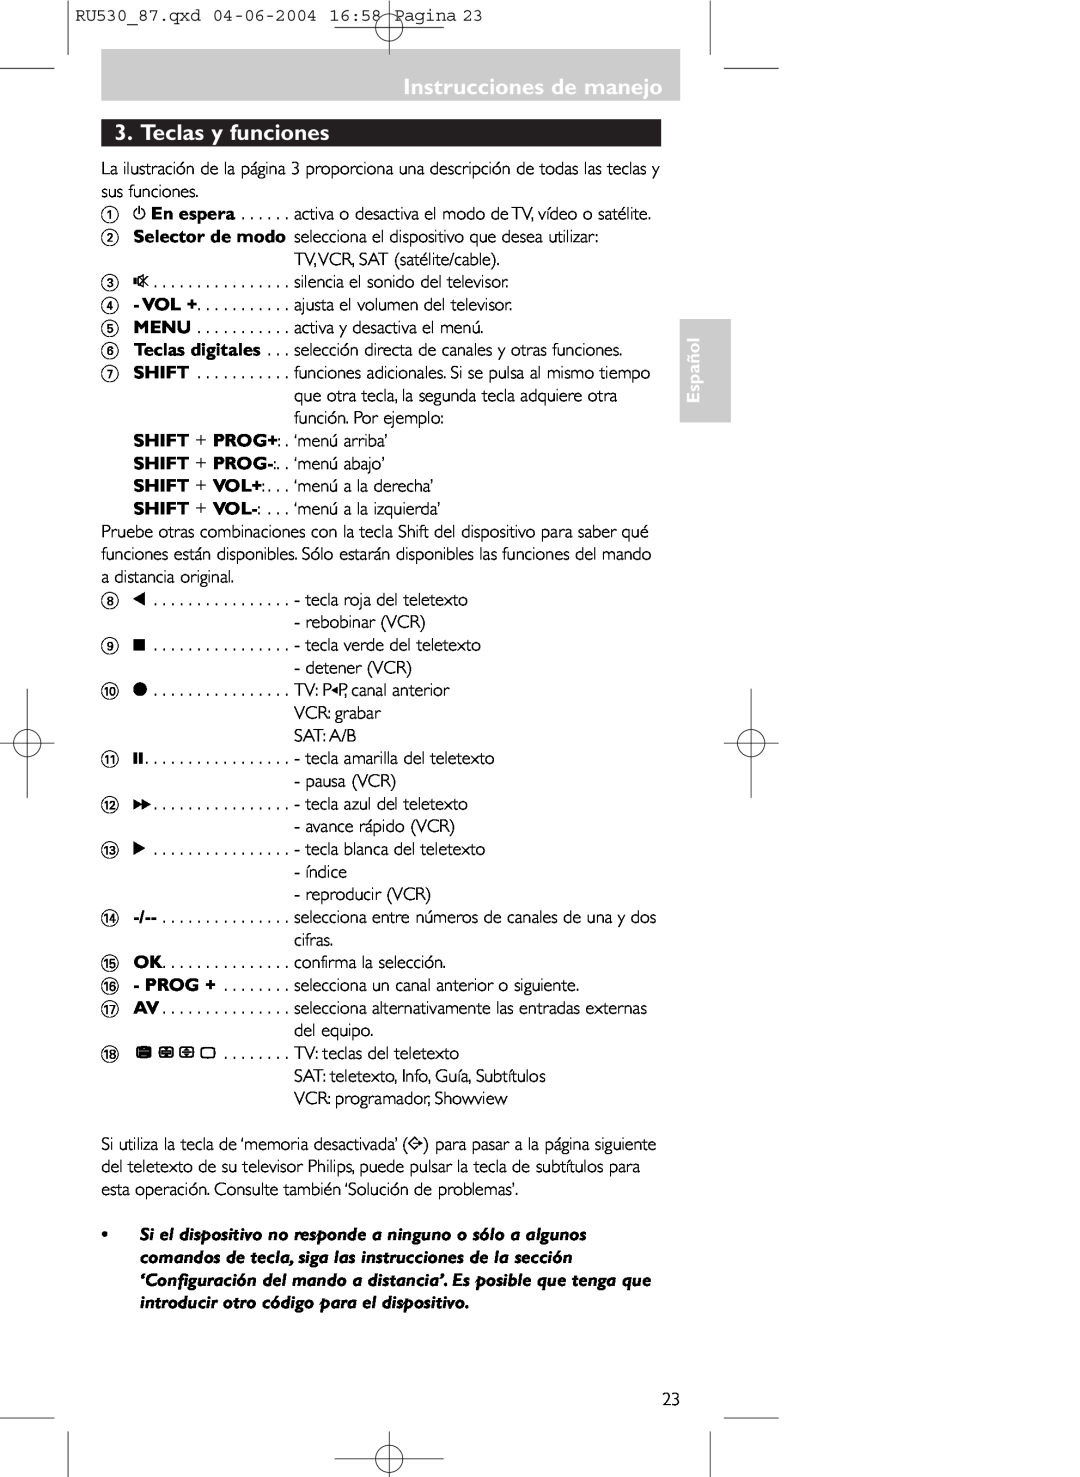 Philips SBC RU 530/87U manual Instrucciones de manejo 3. Teclas y funciones, Español 